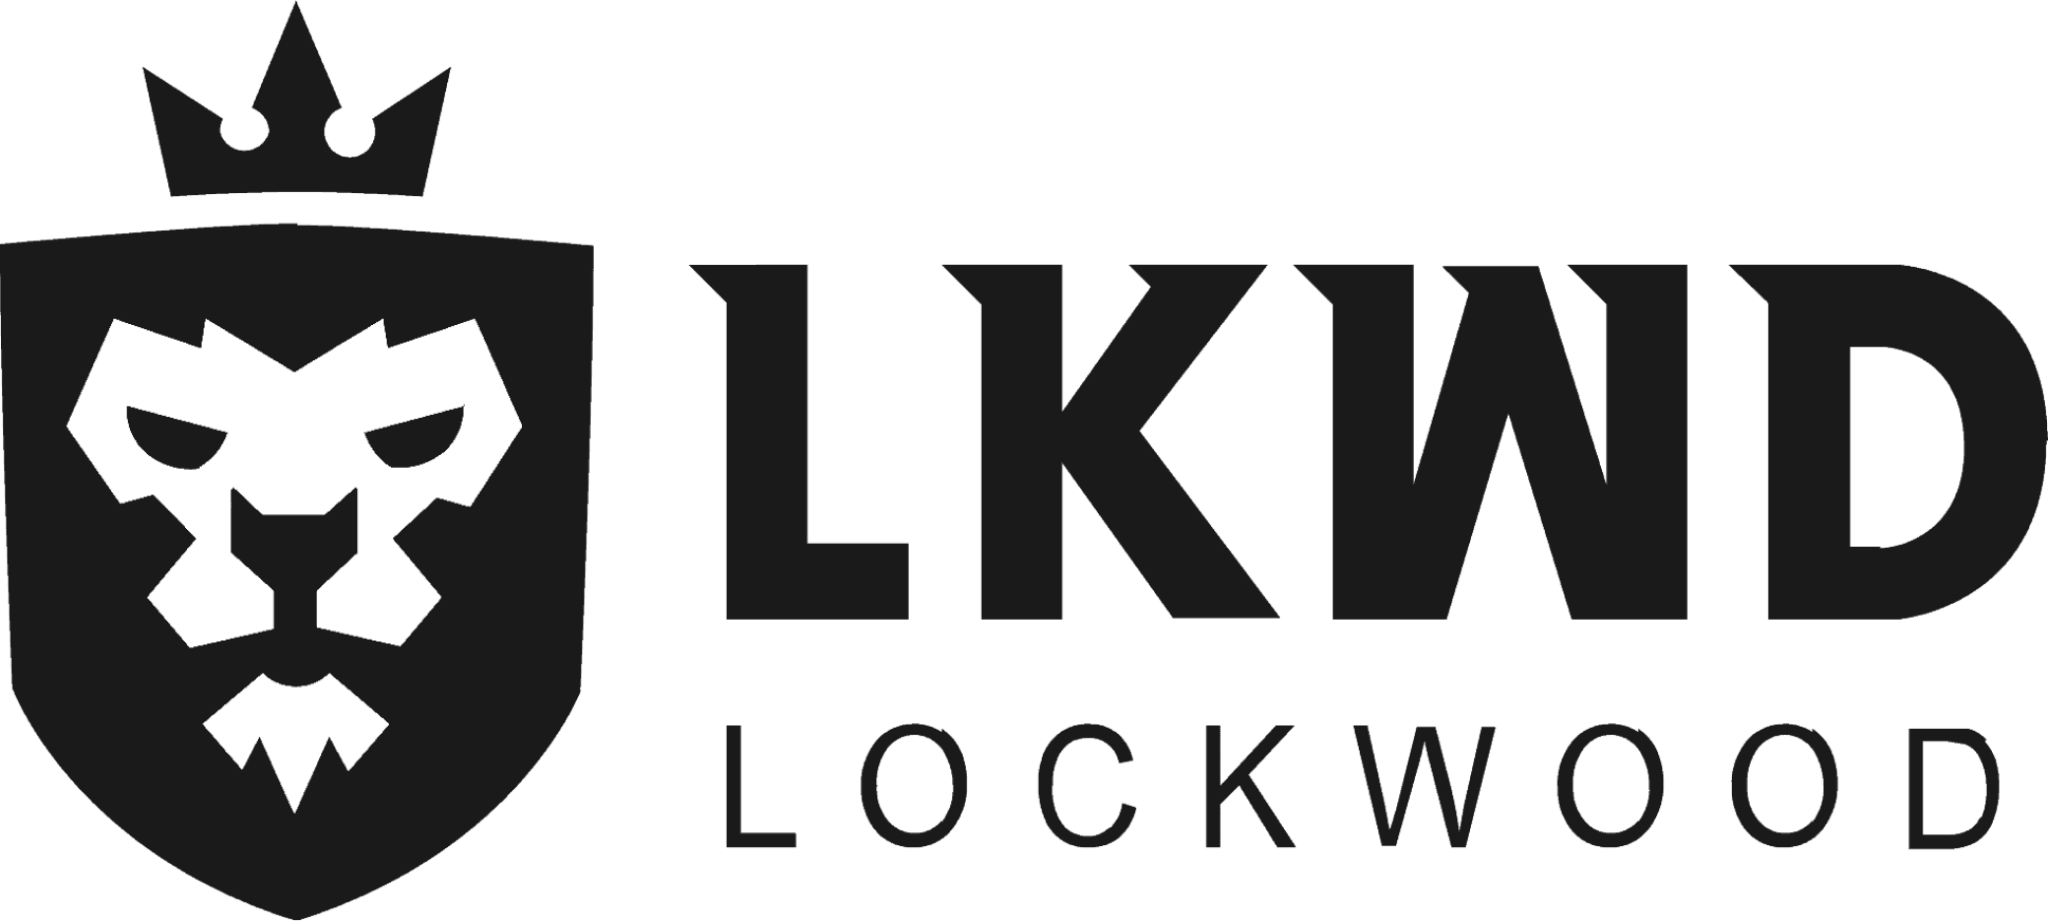 lockwood publishing